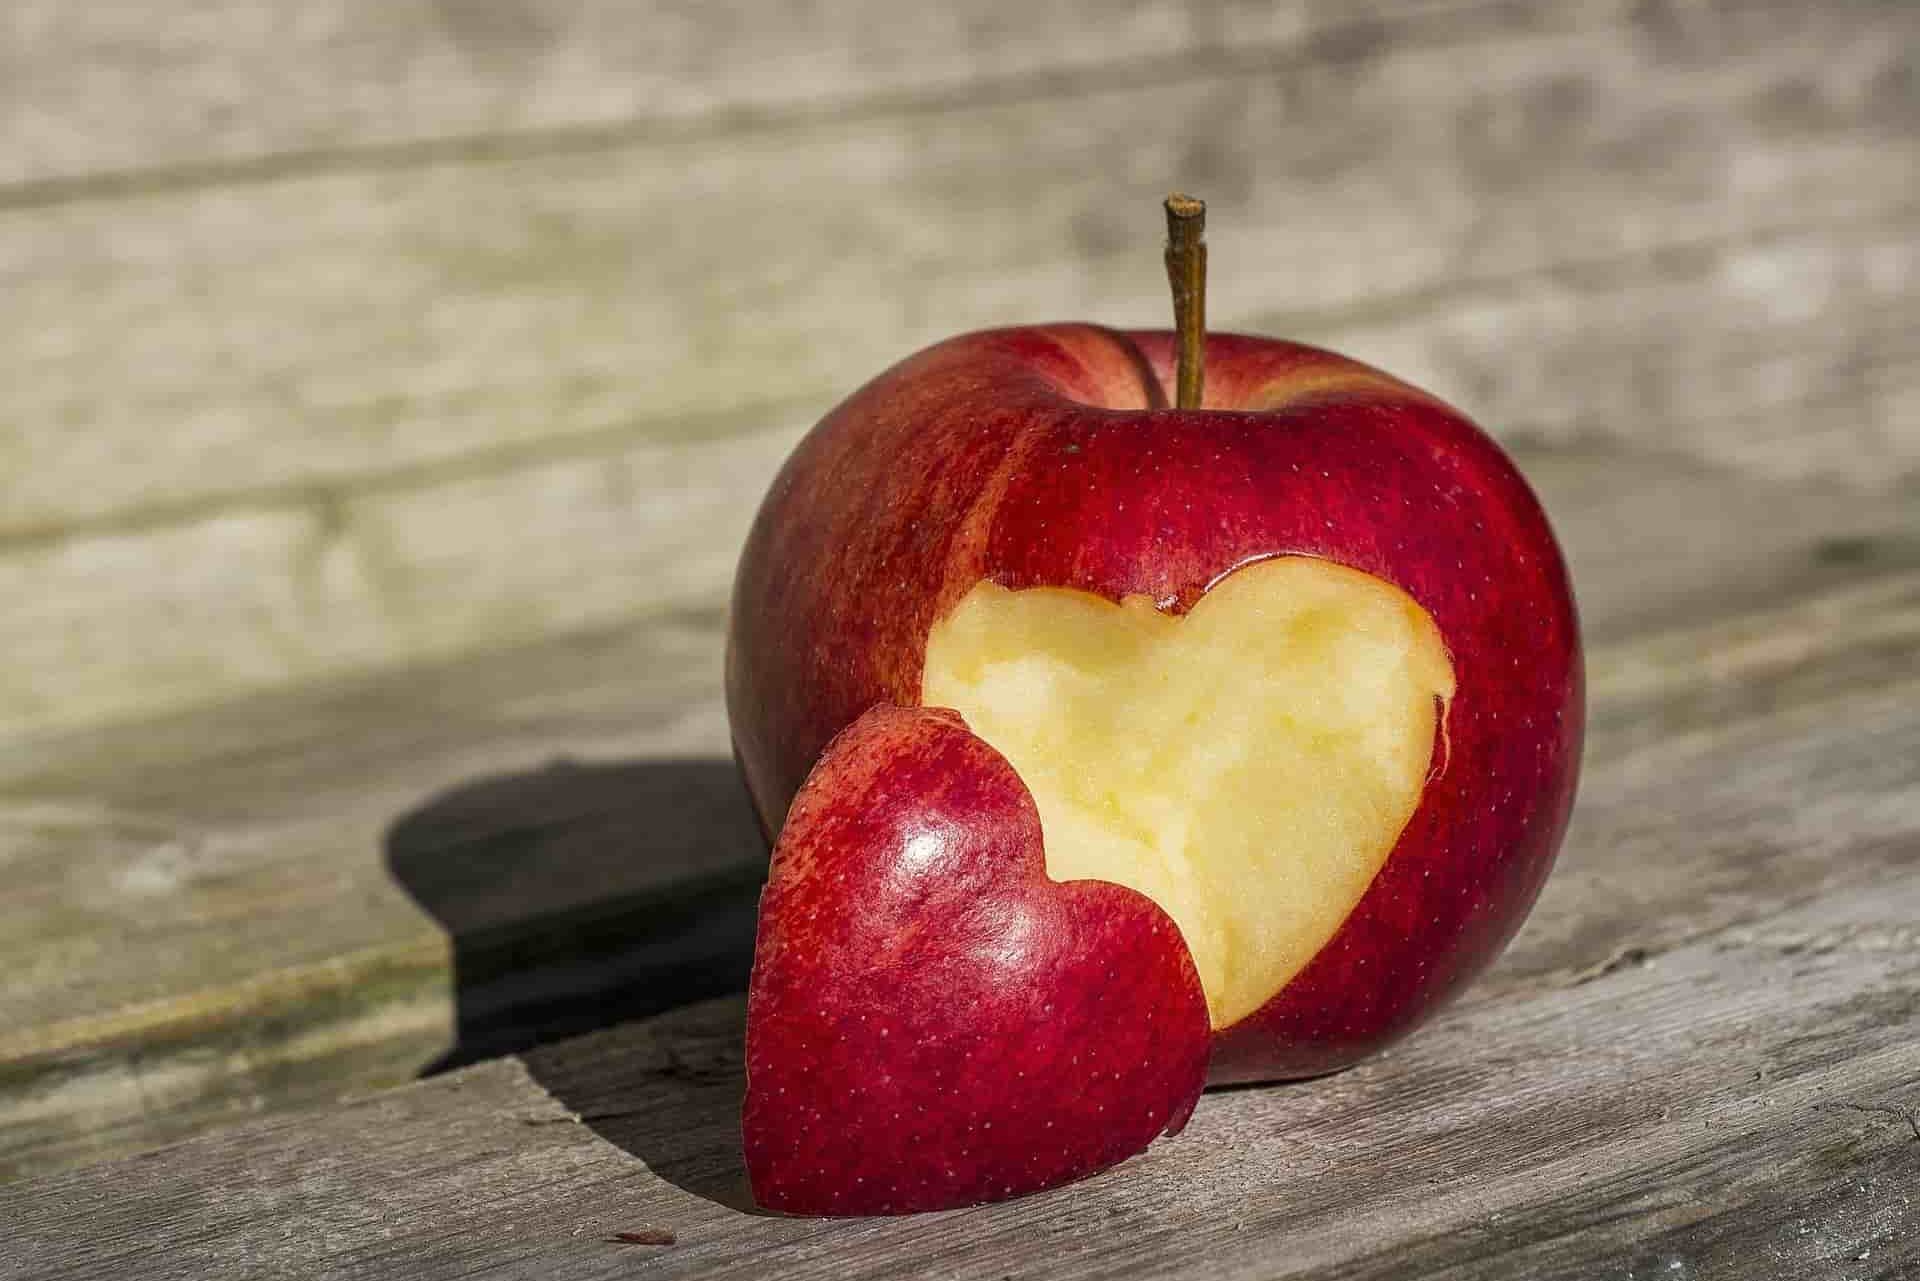 فوائد افضل انواع التفاح الاحمر للتجاره